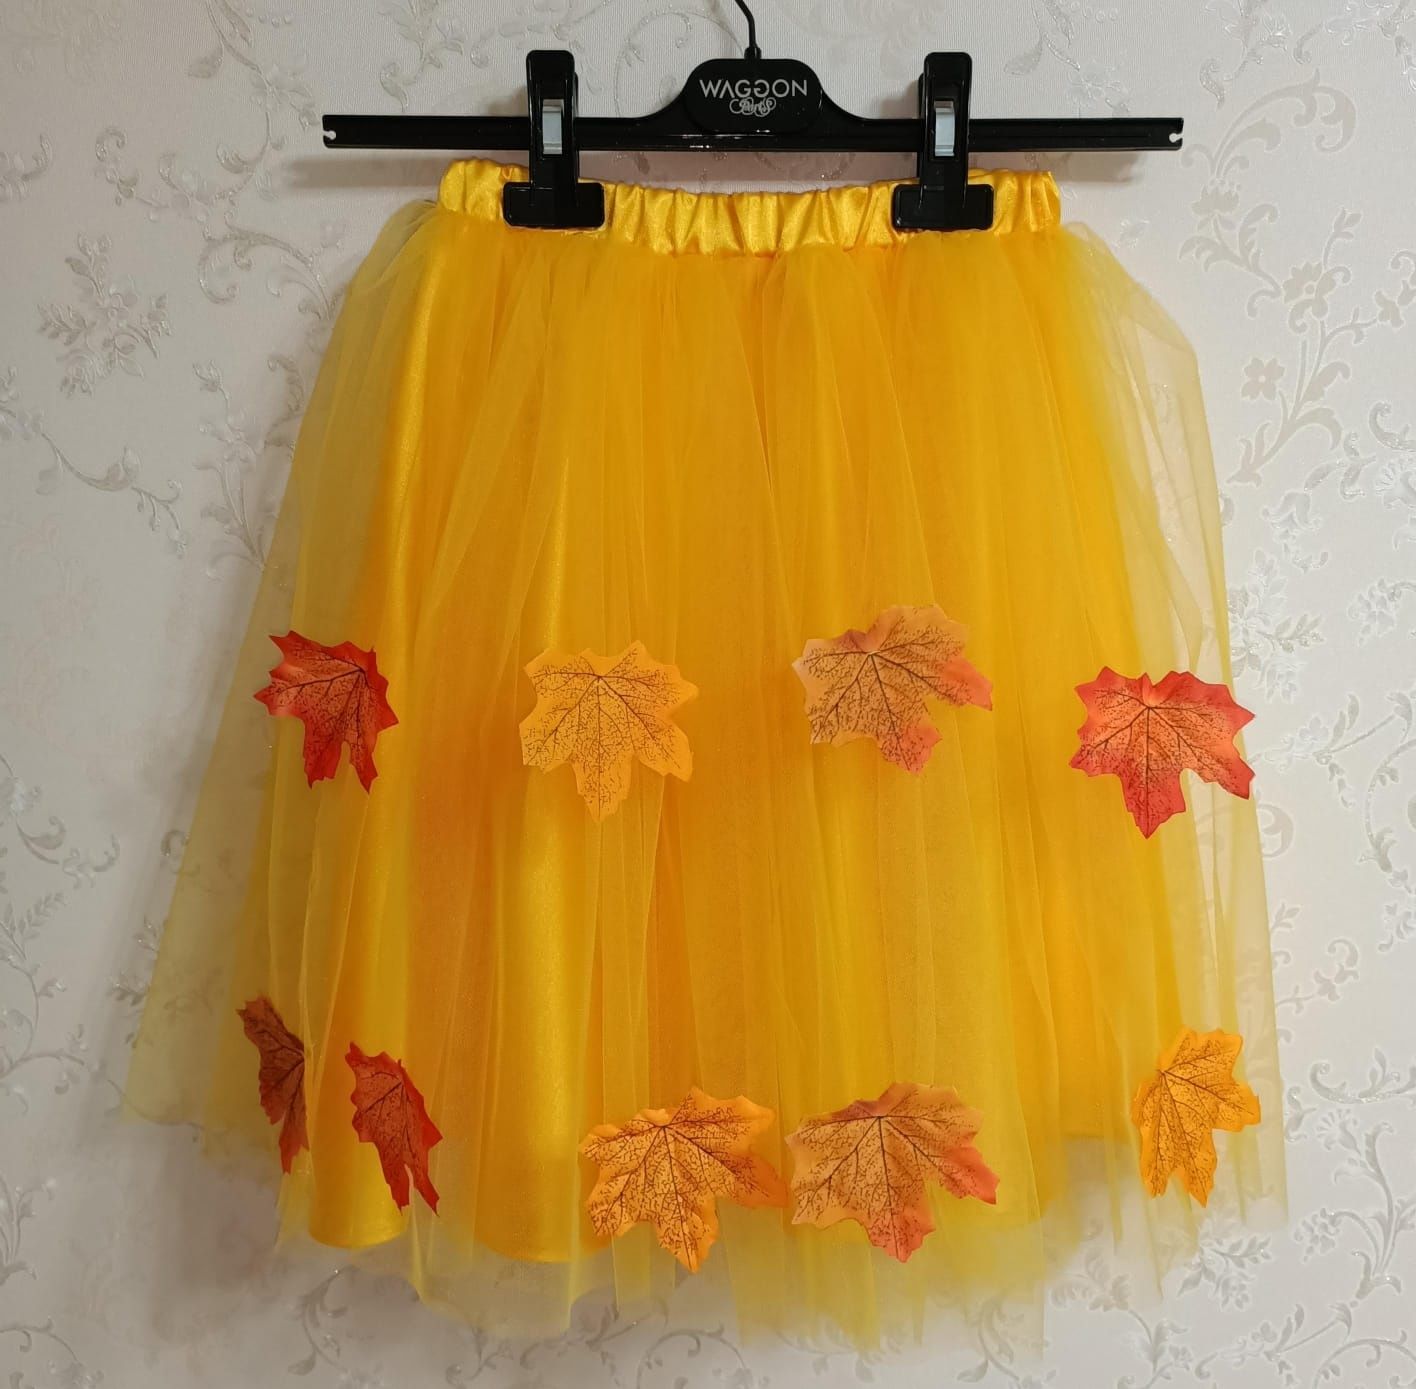 Детские фатиновые юбки - купить юбочки из фатина для девочек в интернет-магазине Лиола